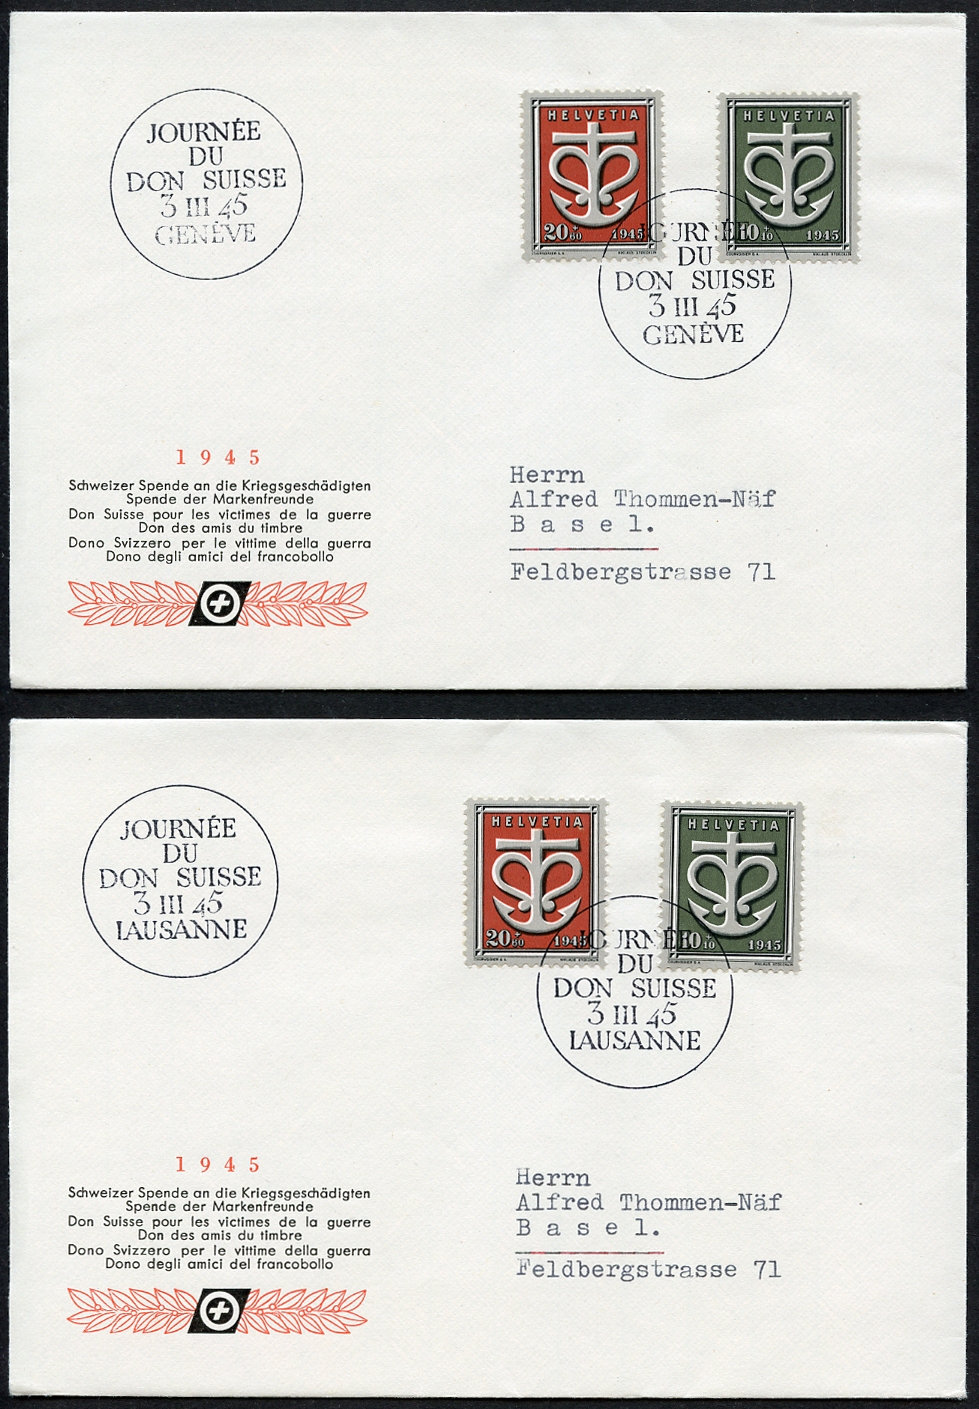 Bild-1: W19-W21 - 1945, Sondermarken für die Schweizer Spende an die Kriegsgeschädigten